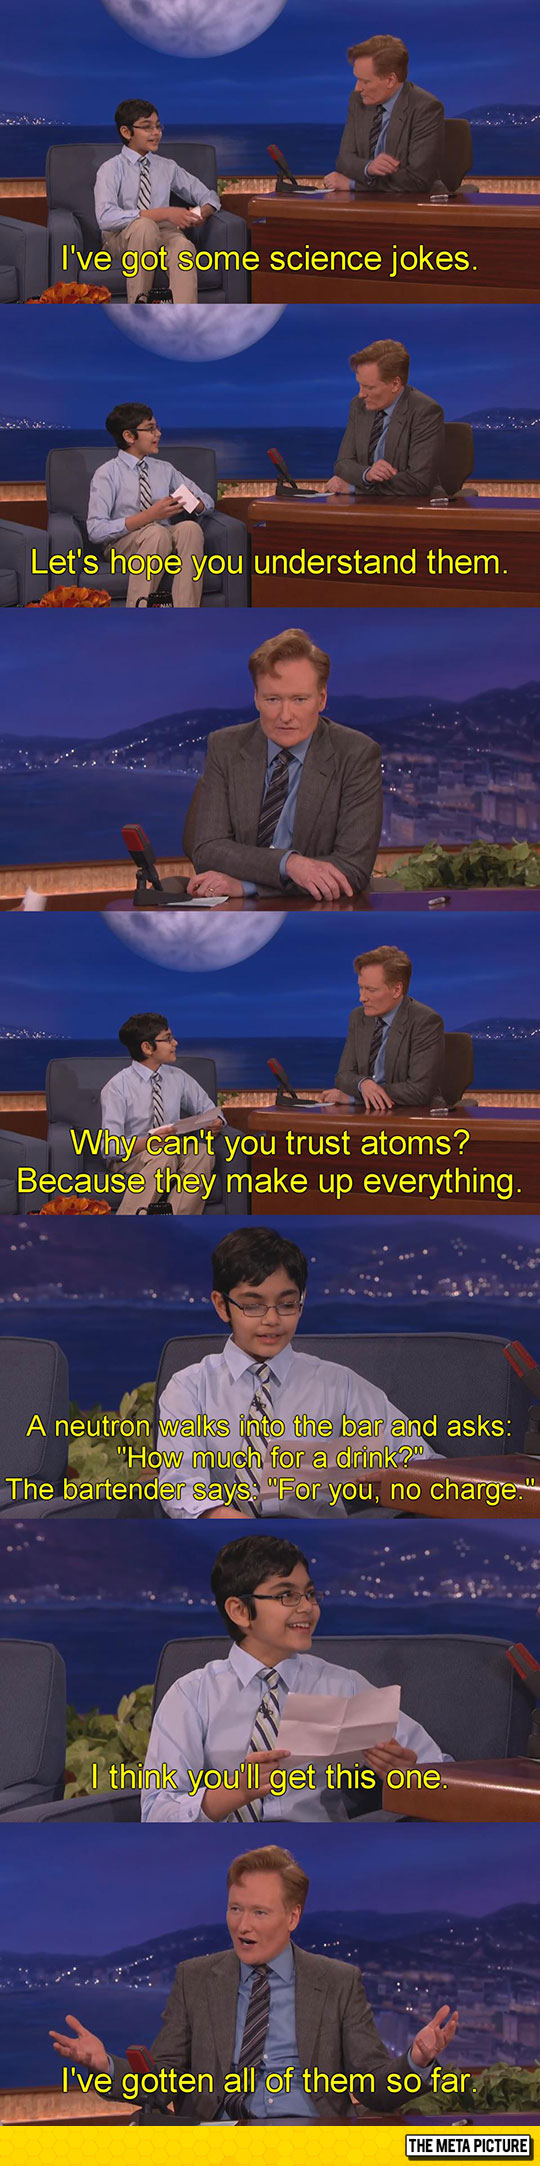 funny-Conan-show-genius-kid-smart-interview